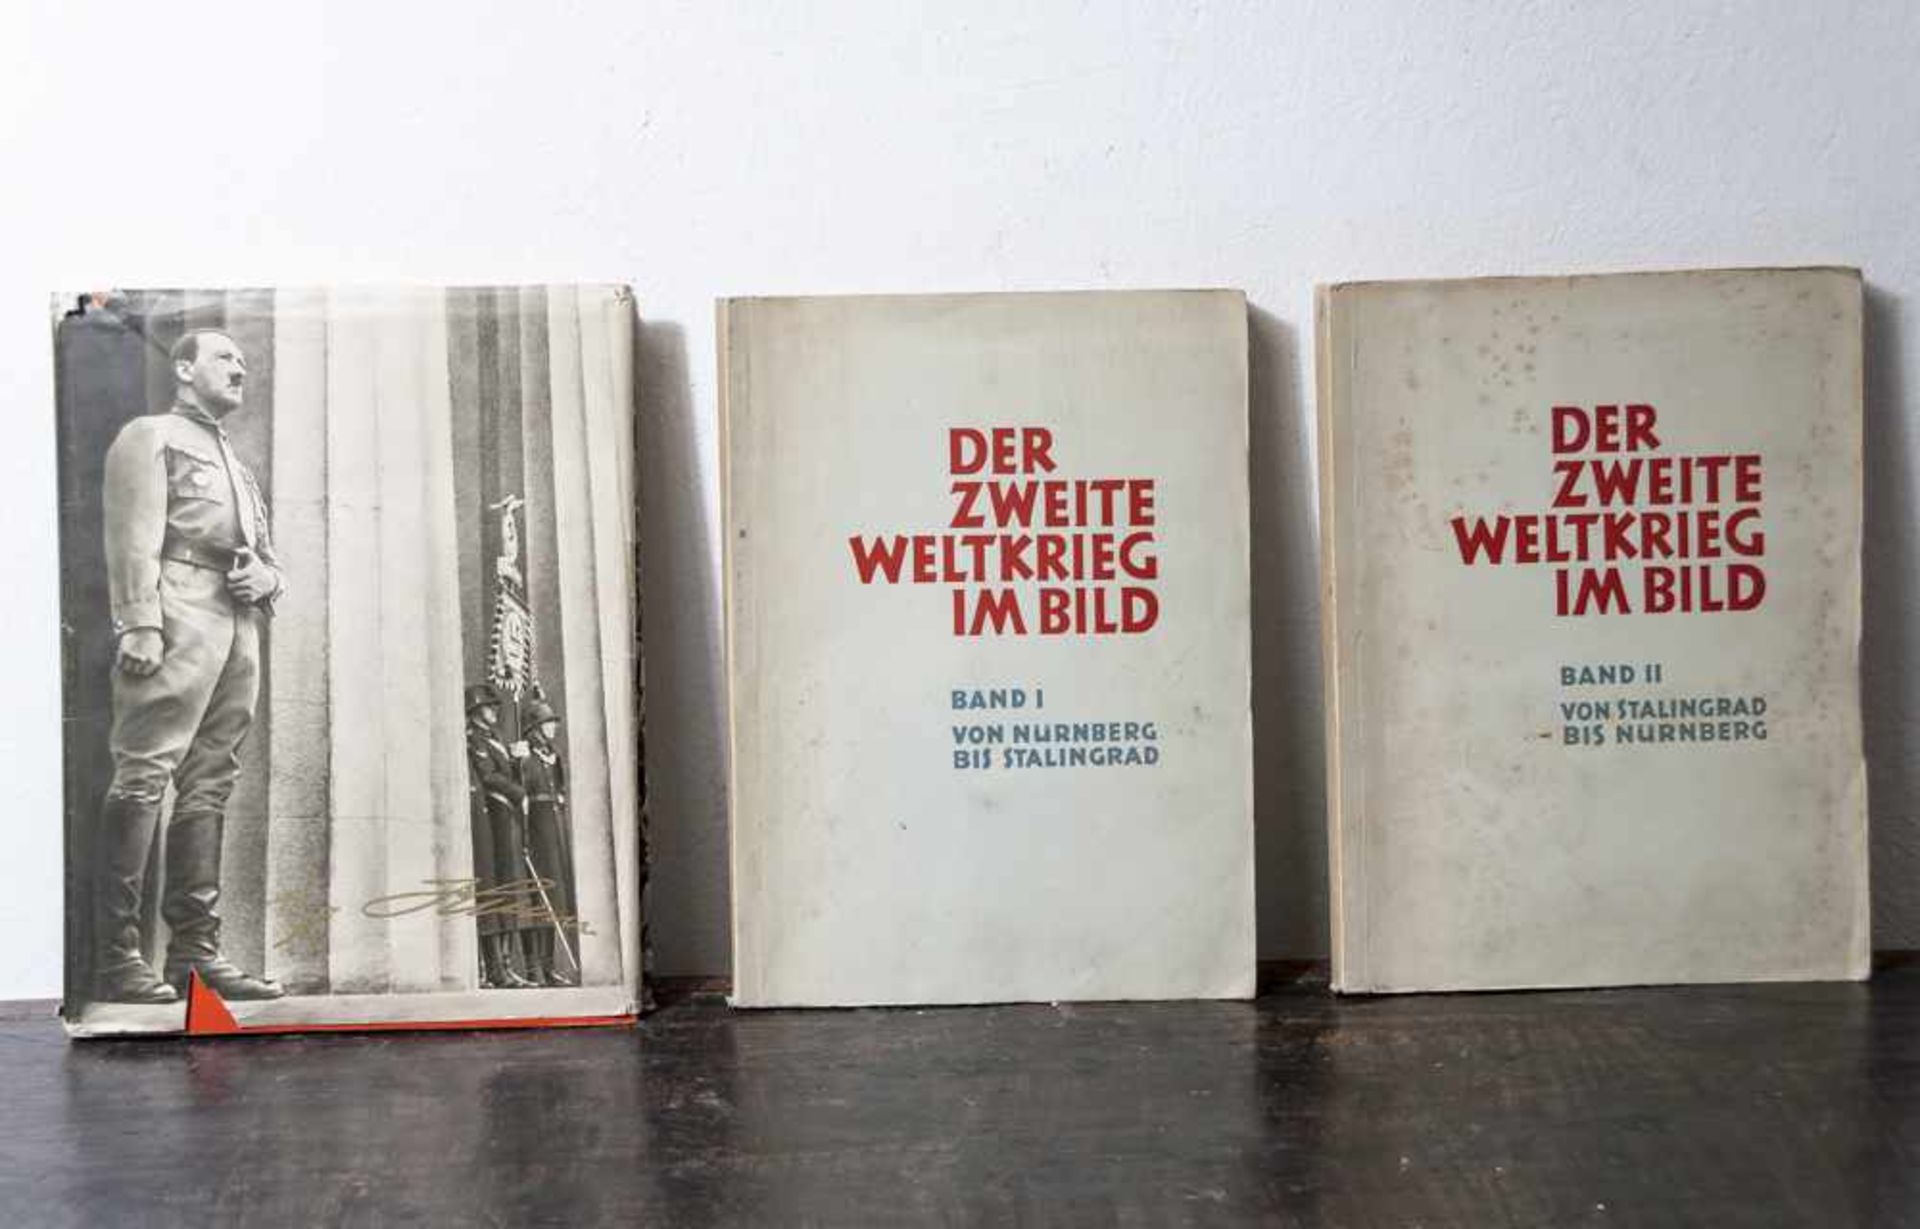 3 Zigarettenbilderalben, III. Reich: a) "Der Zweite Weltkrieg im Bild", Bd. I "VonNürnberg bis